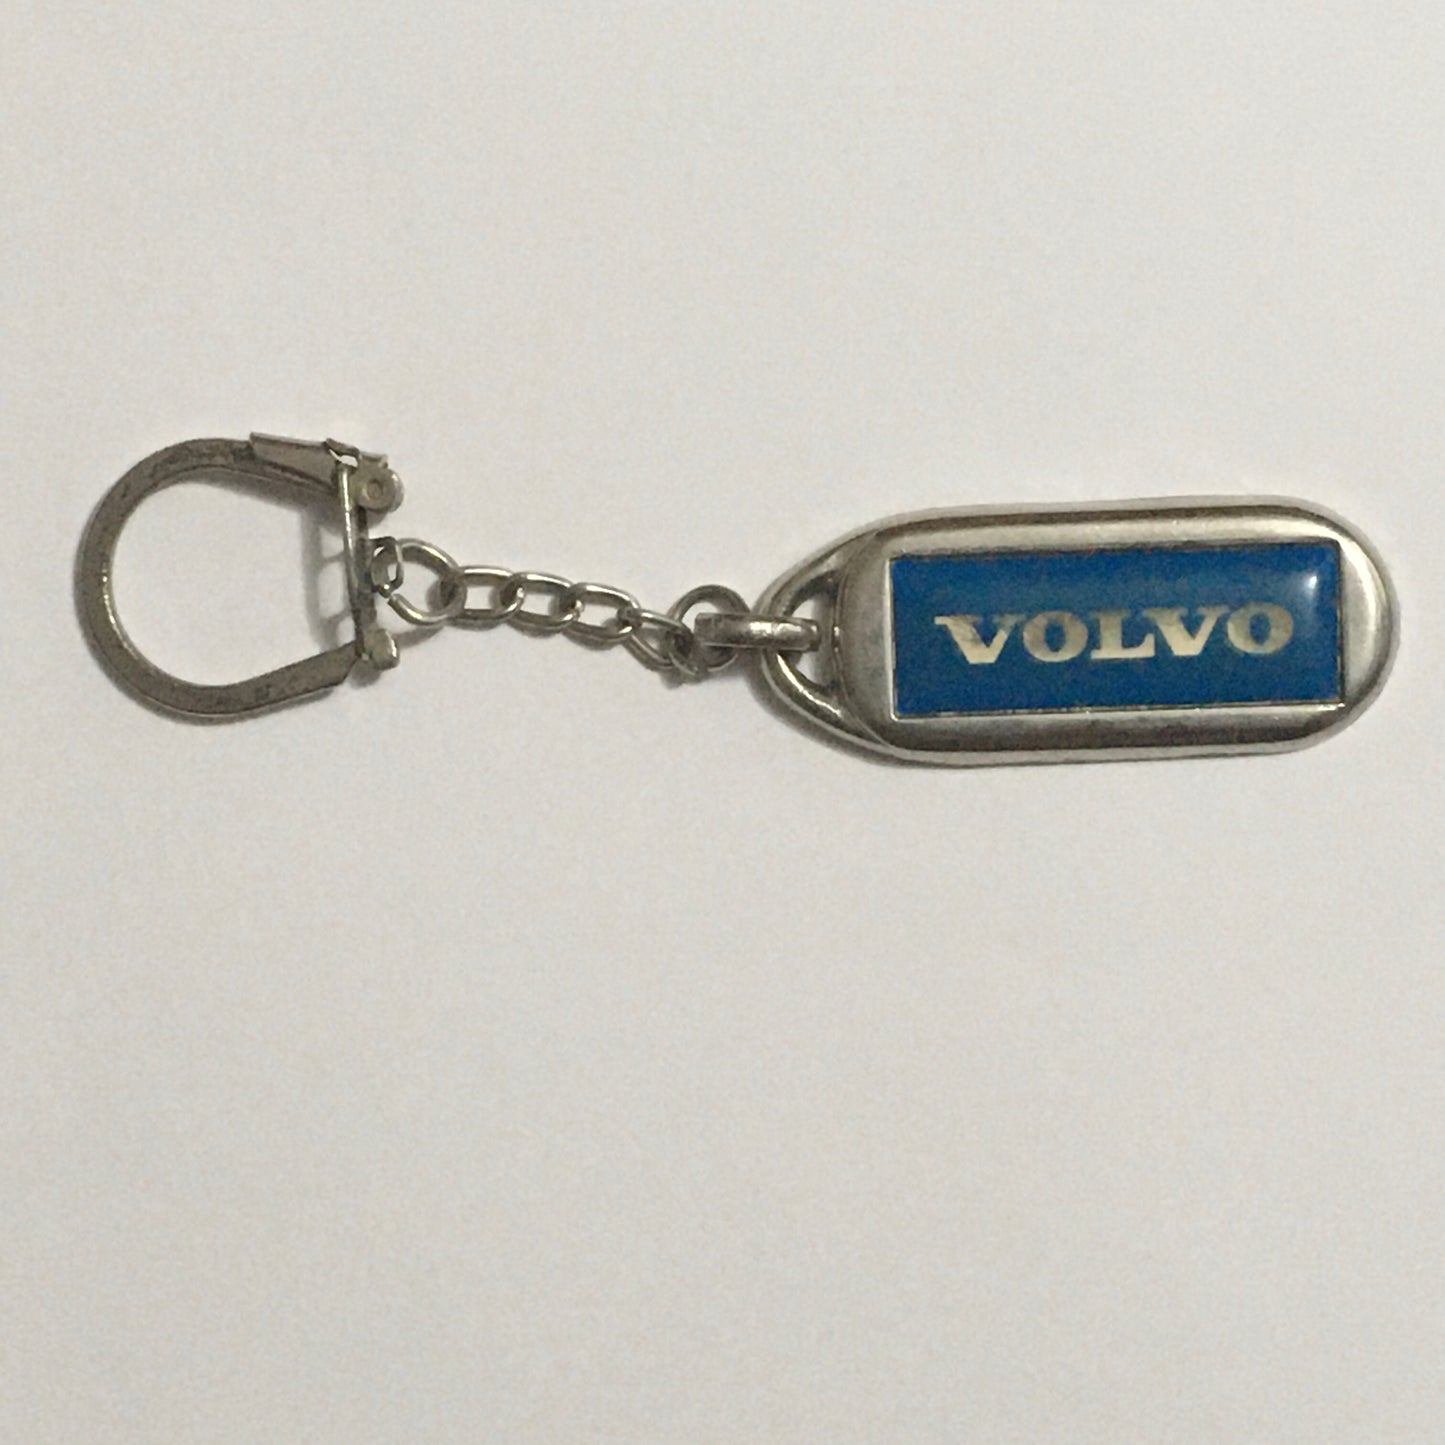 Volvo, Portachiavi in Metallo con Logo della Casa Automobilistica Svedese - Raggi's Collectibles' Automotive Art